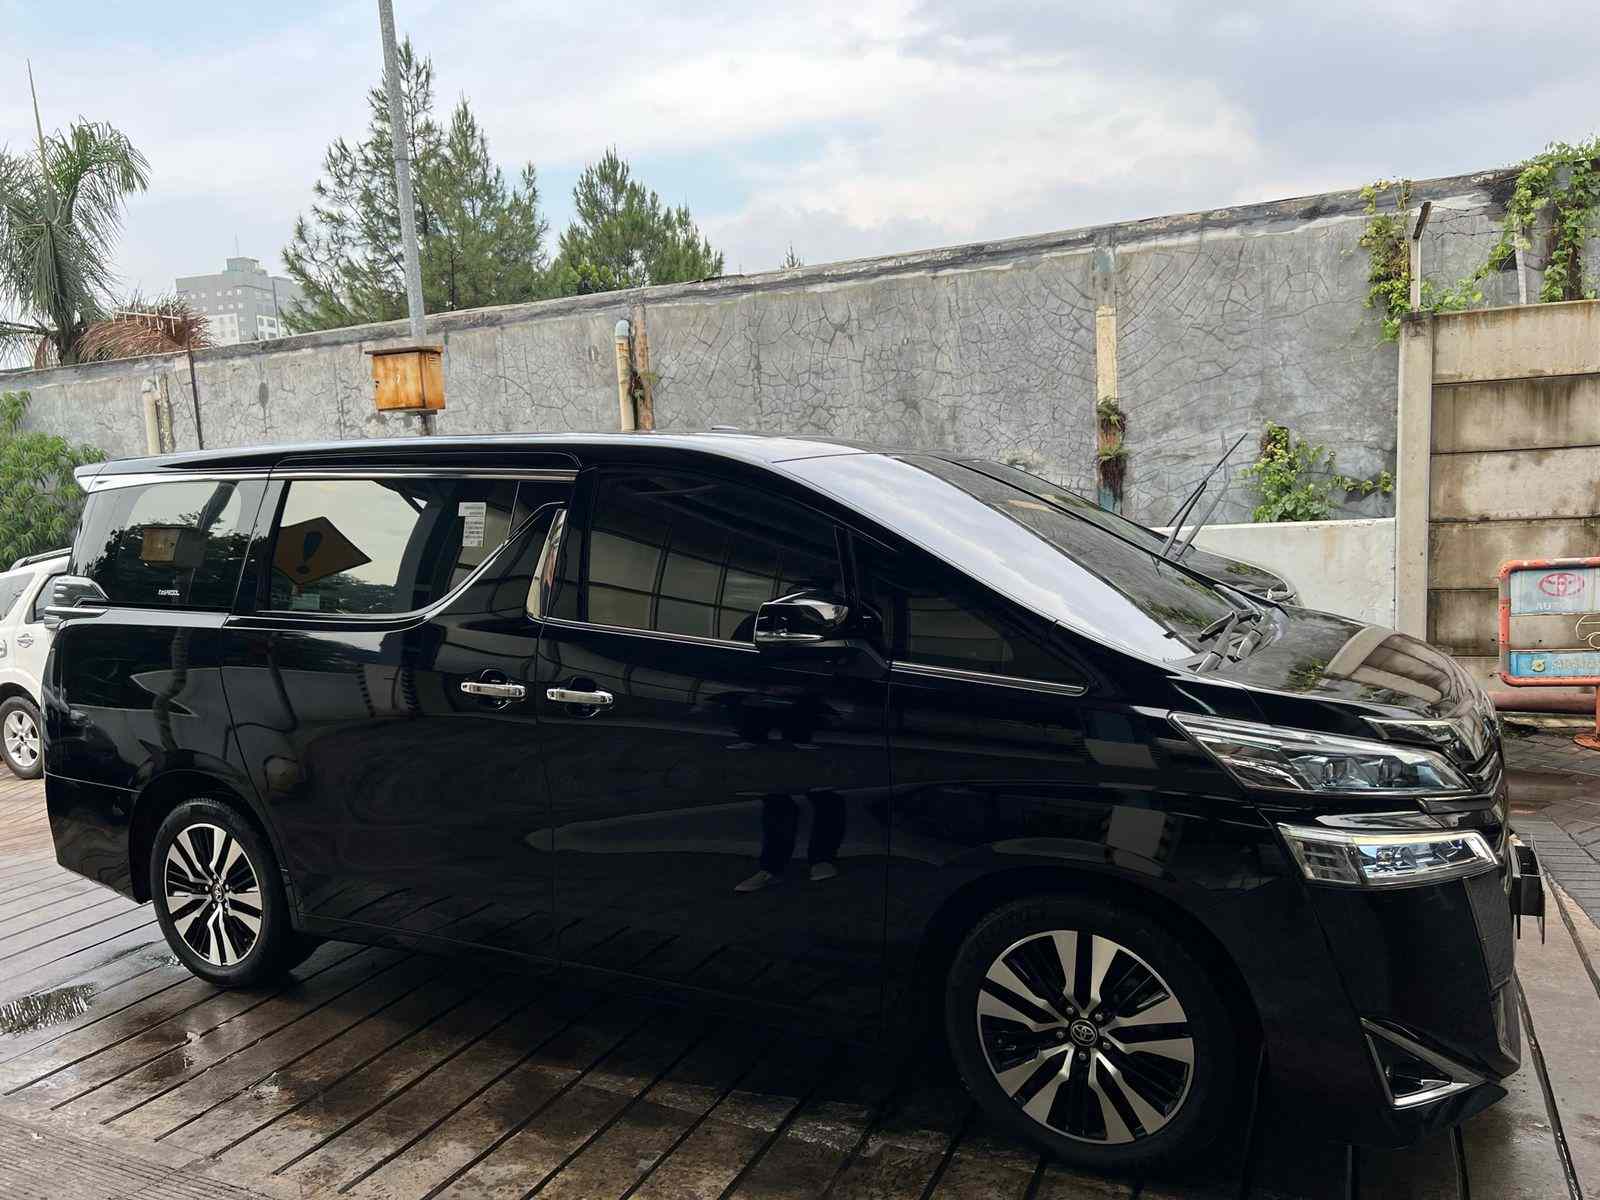 Promo Rental Mobil Alphard Di Semarang